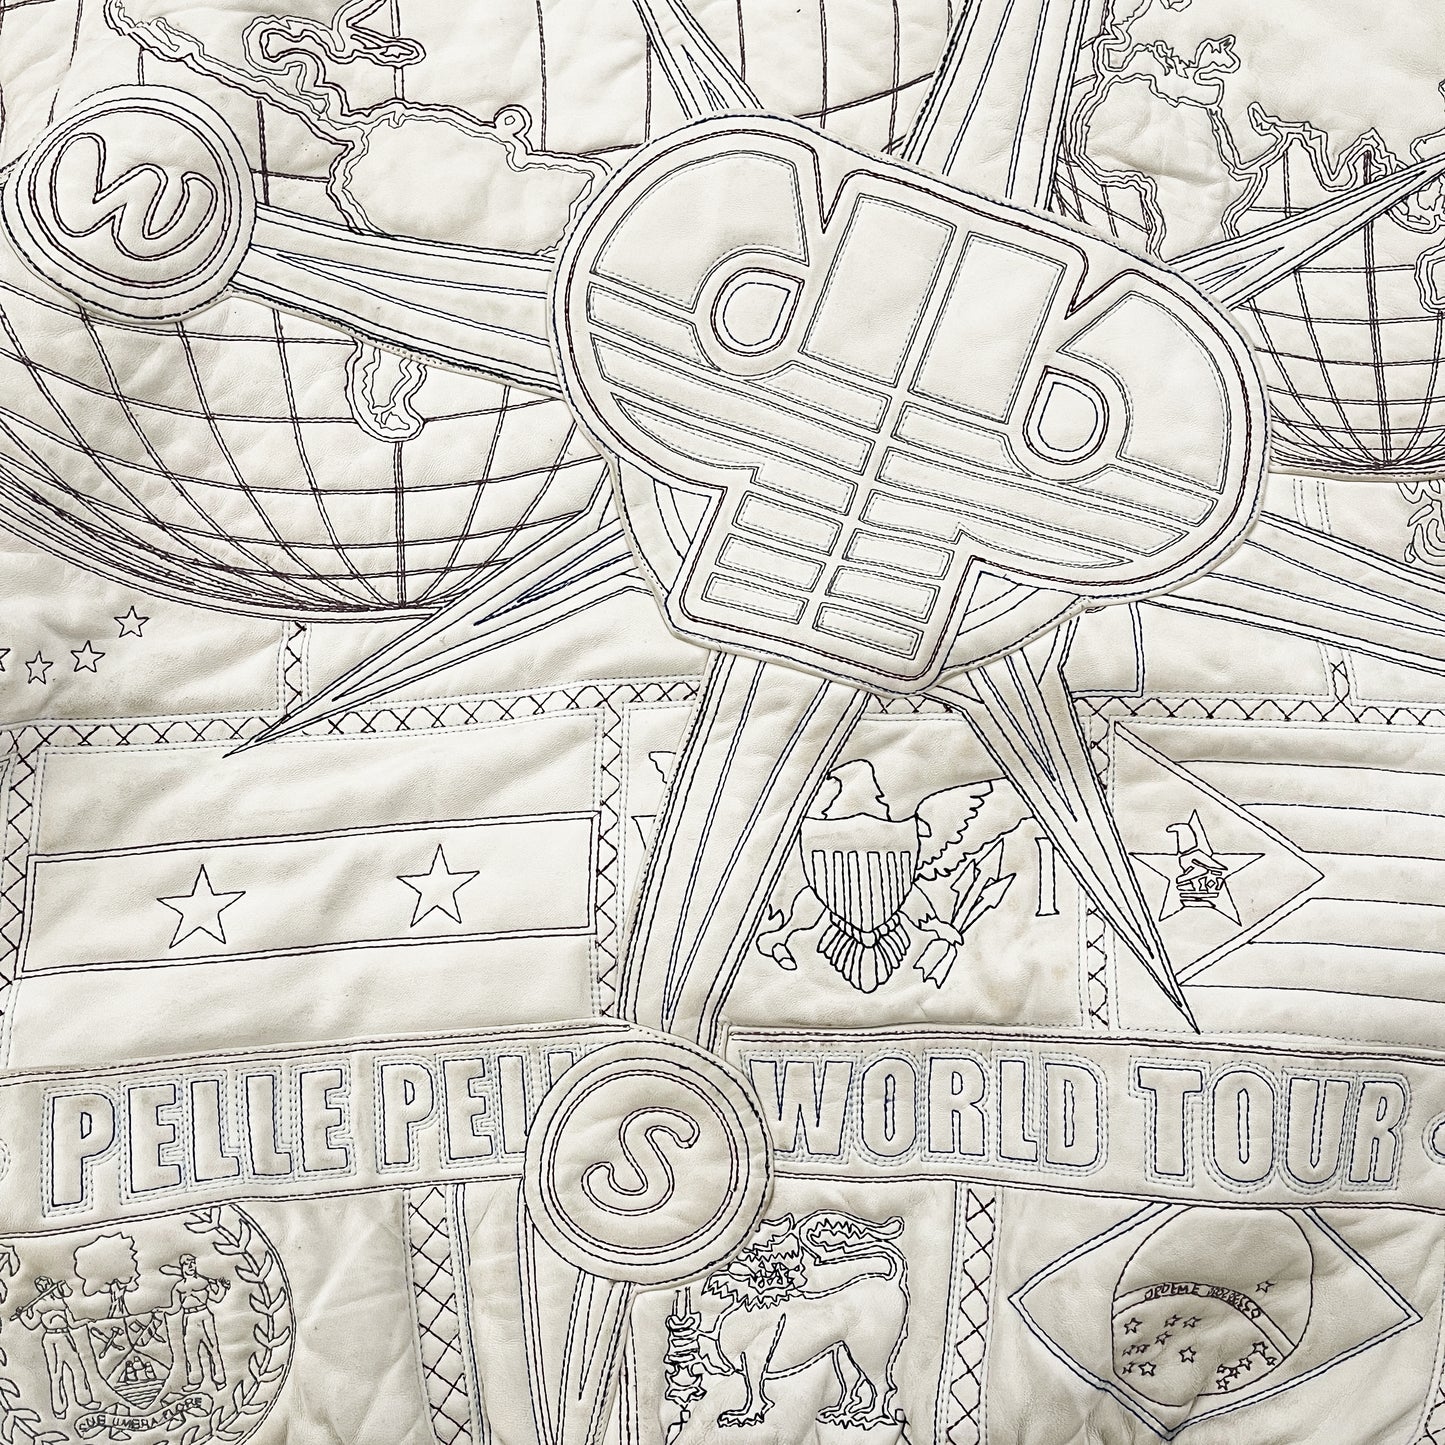 Pellé Pellé World Tour Leather Jacket